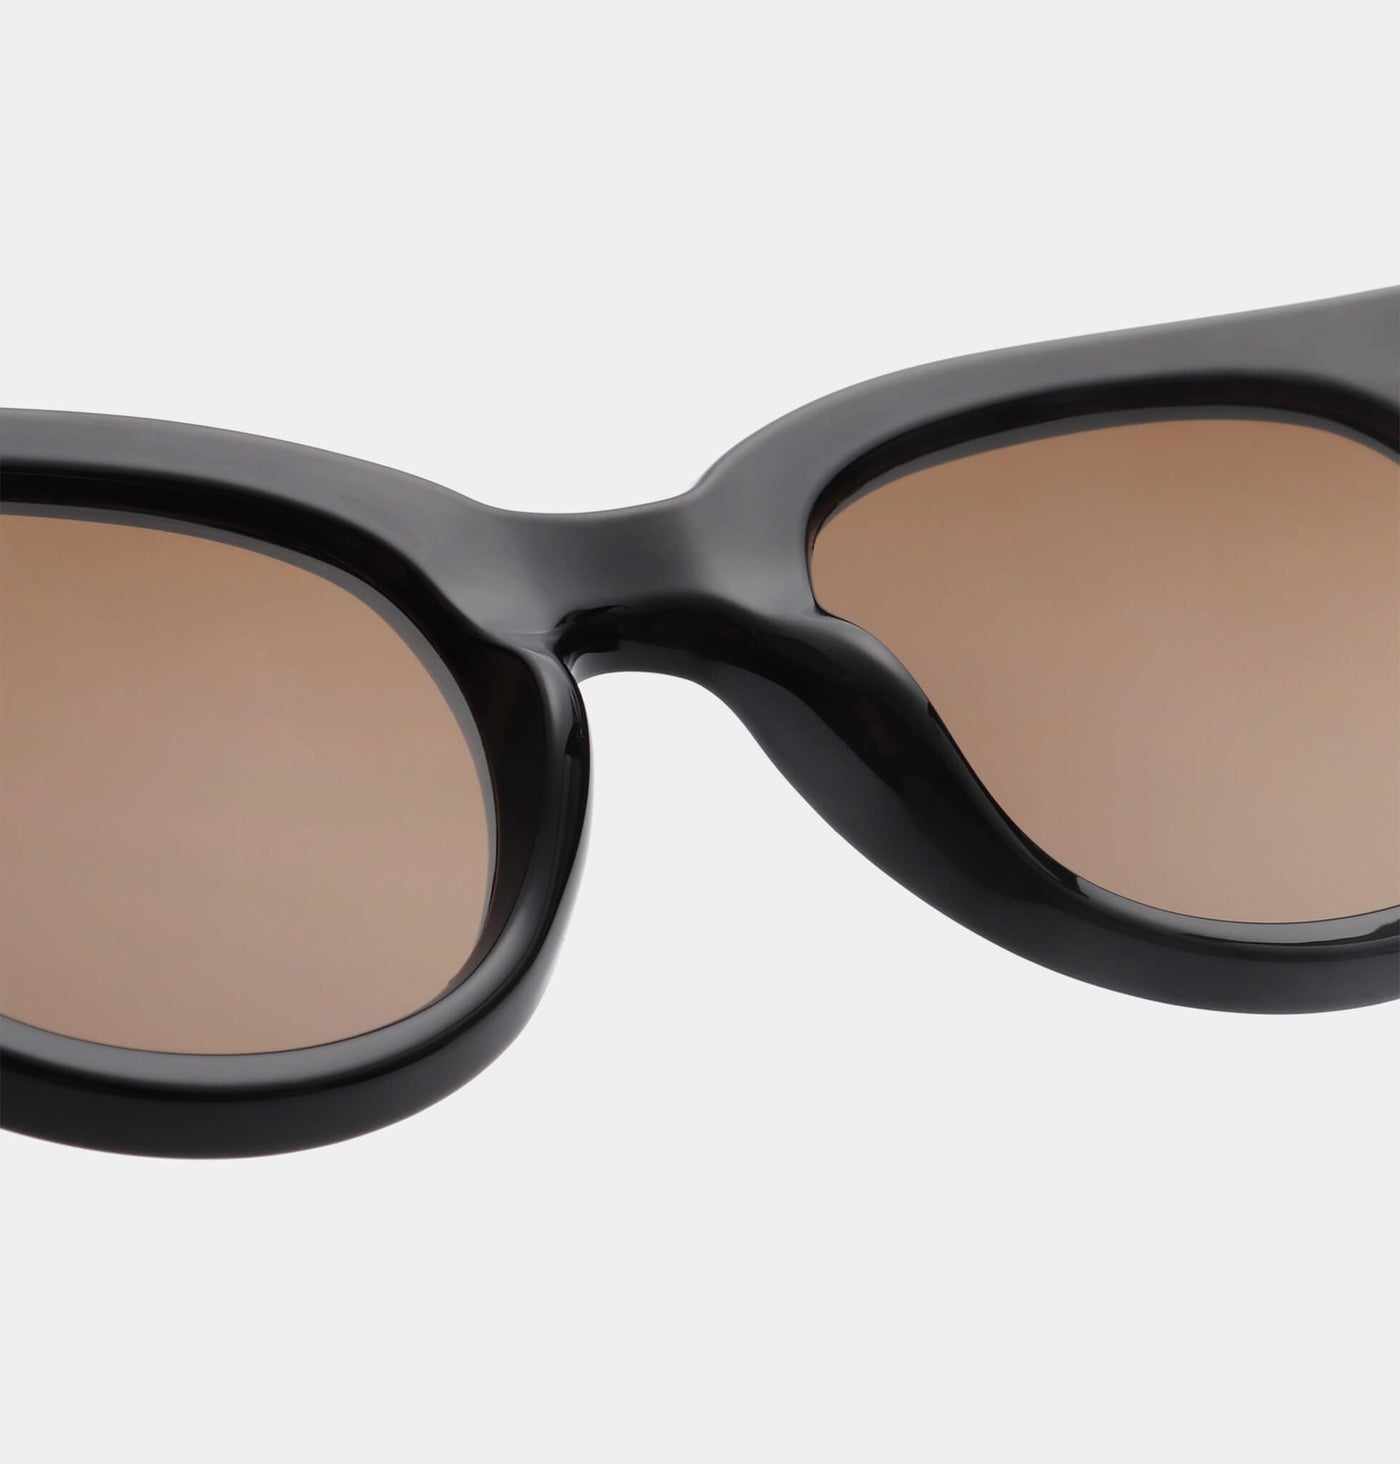 A Kjaerbede Sunglasses Lilly Black - stylecreep.com